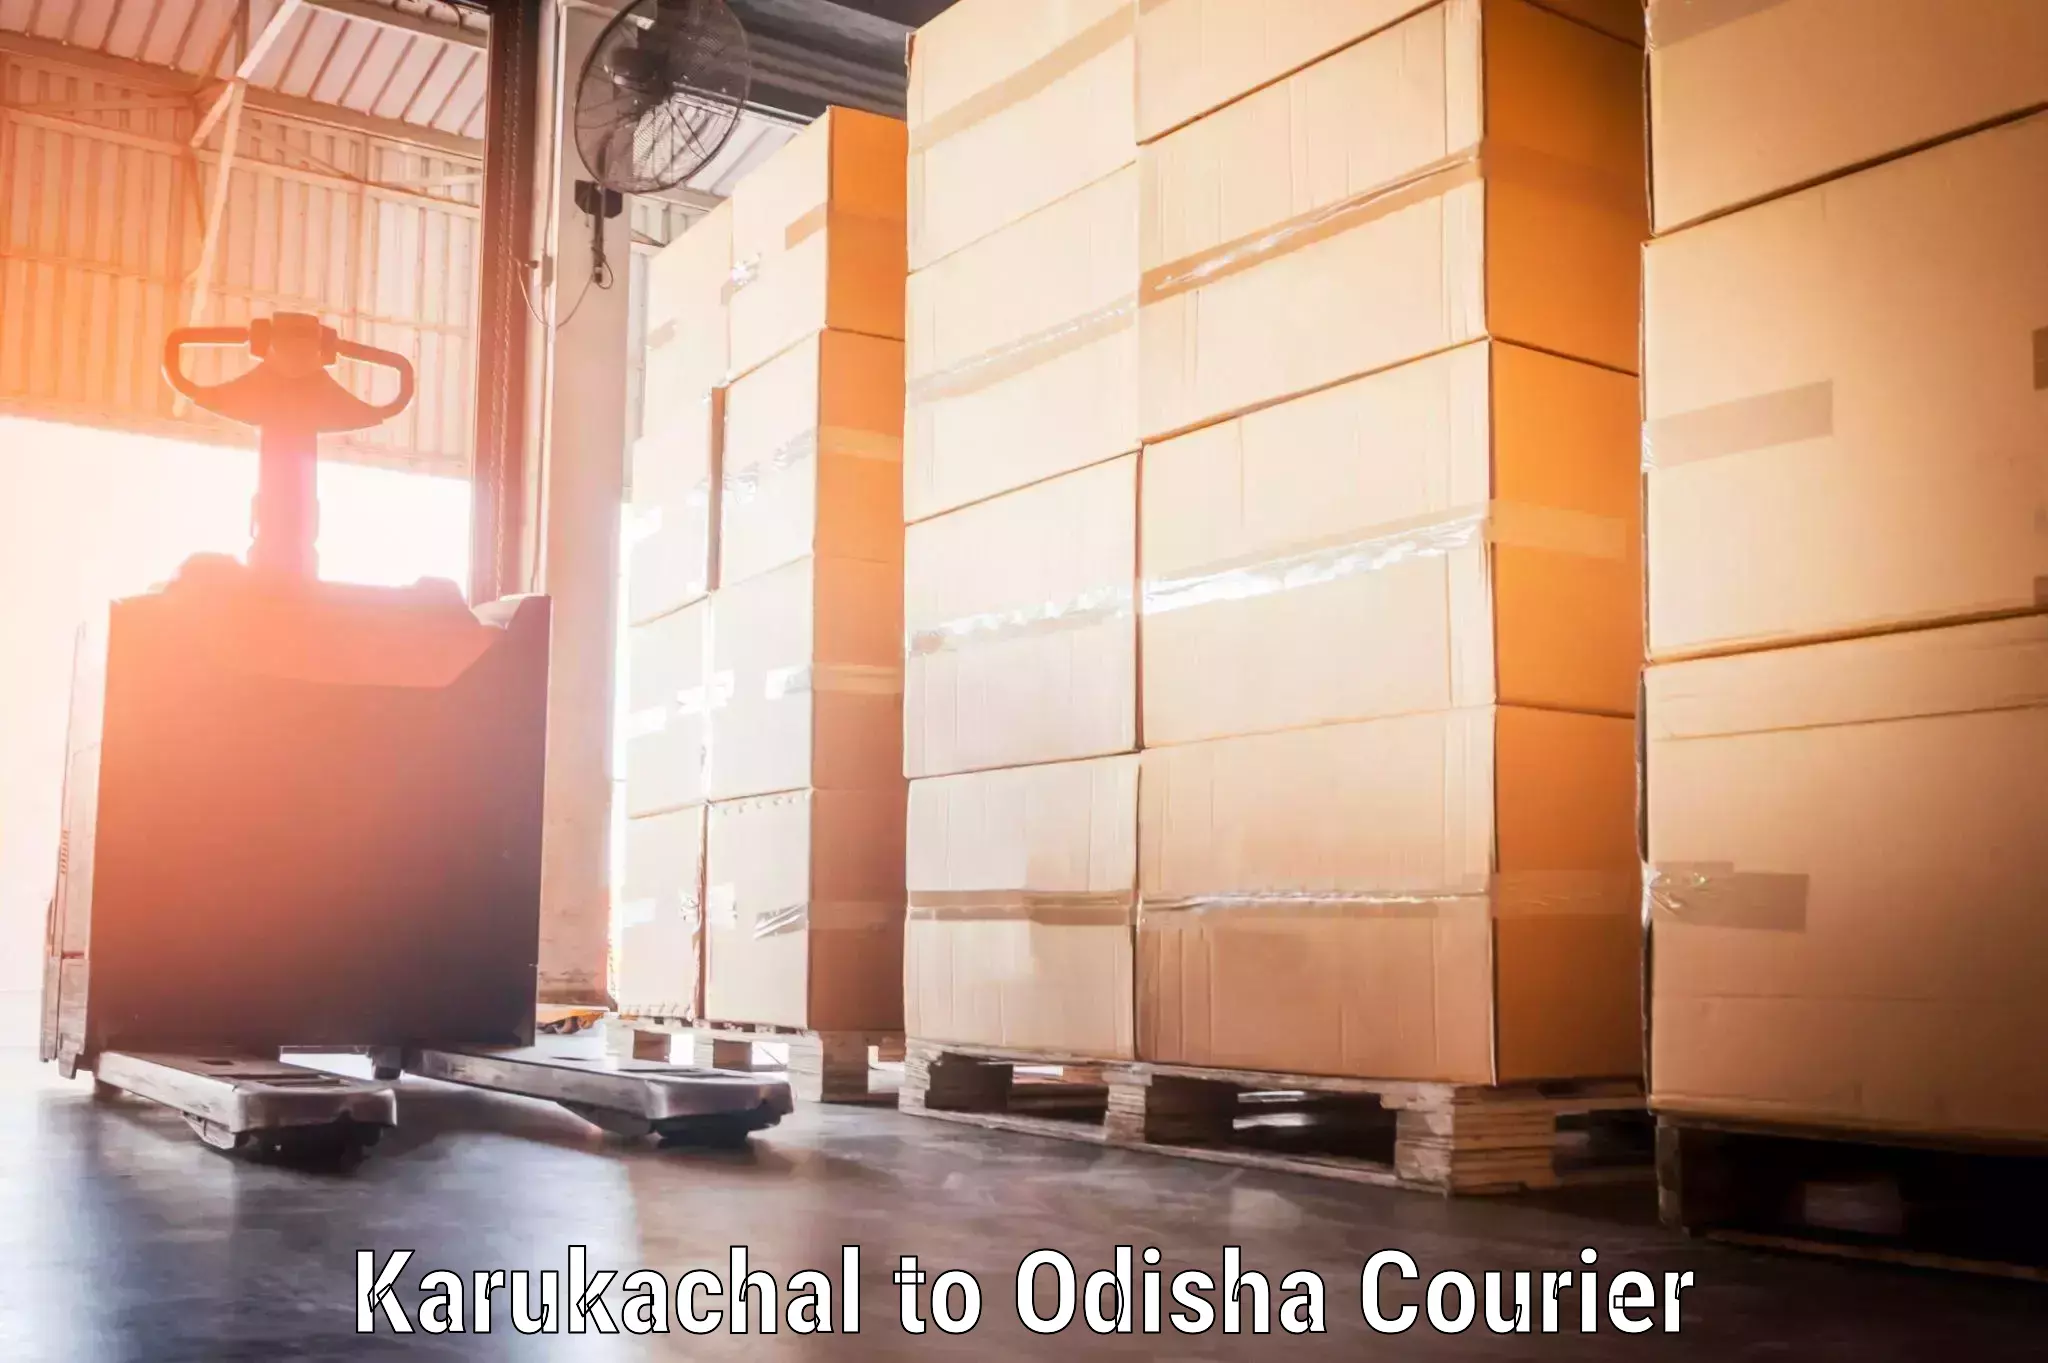 Luggage transport deals Karukachal to Kendrapara